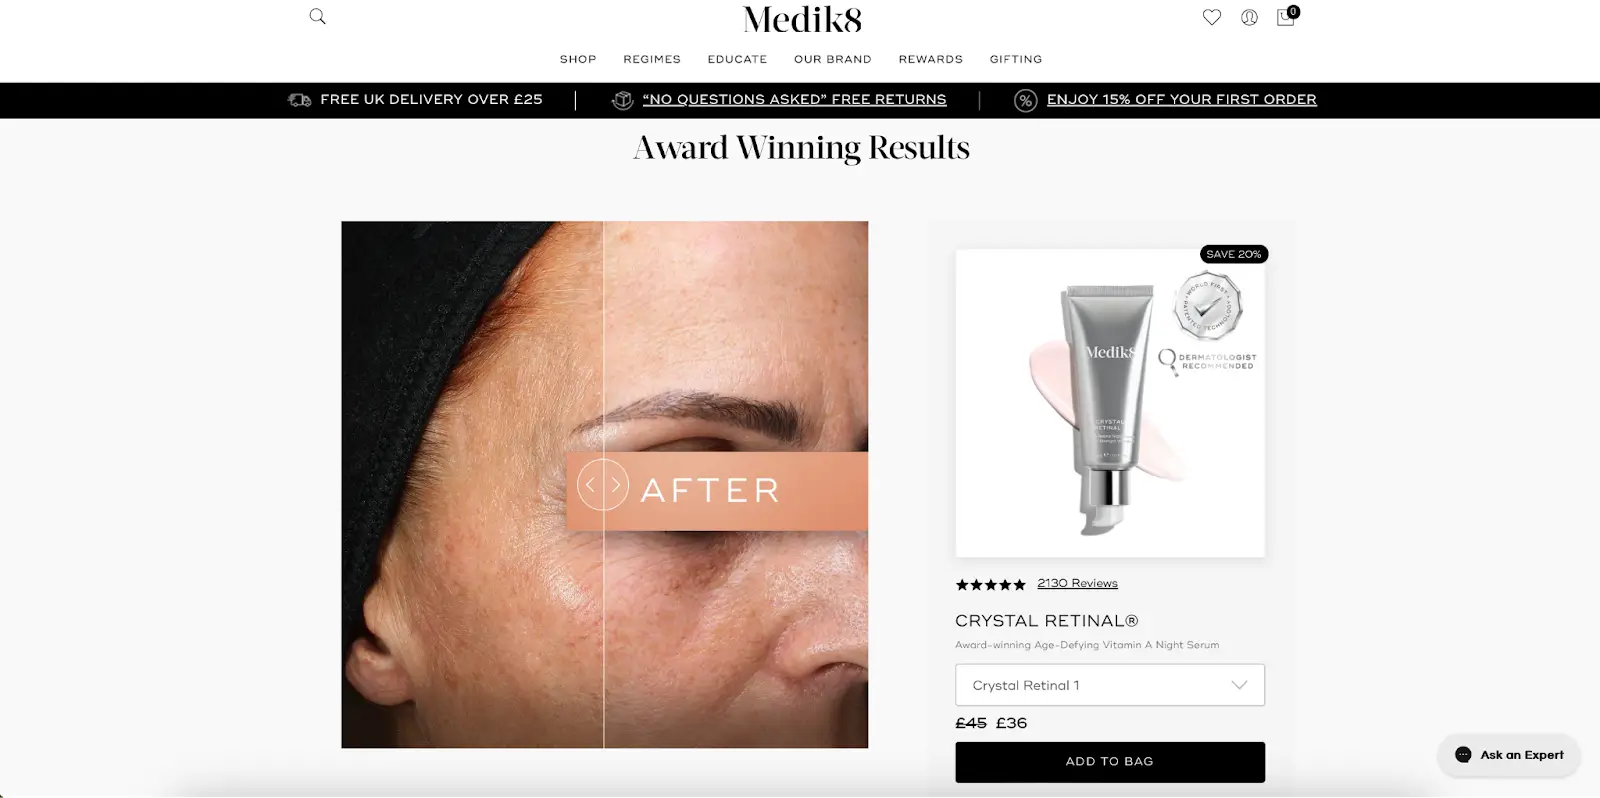 這張圖片展示了英國專業護膚品牌 Medik8 如何強調其產品在對抗老化和色素沉著方面的功效。它討論了利益細分如何幫助像 Medik8 這樣的護膚品牌識別客戶的痛點，進行相應的細分，並將這些細分與合適的產品相匹配。